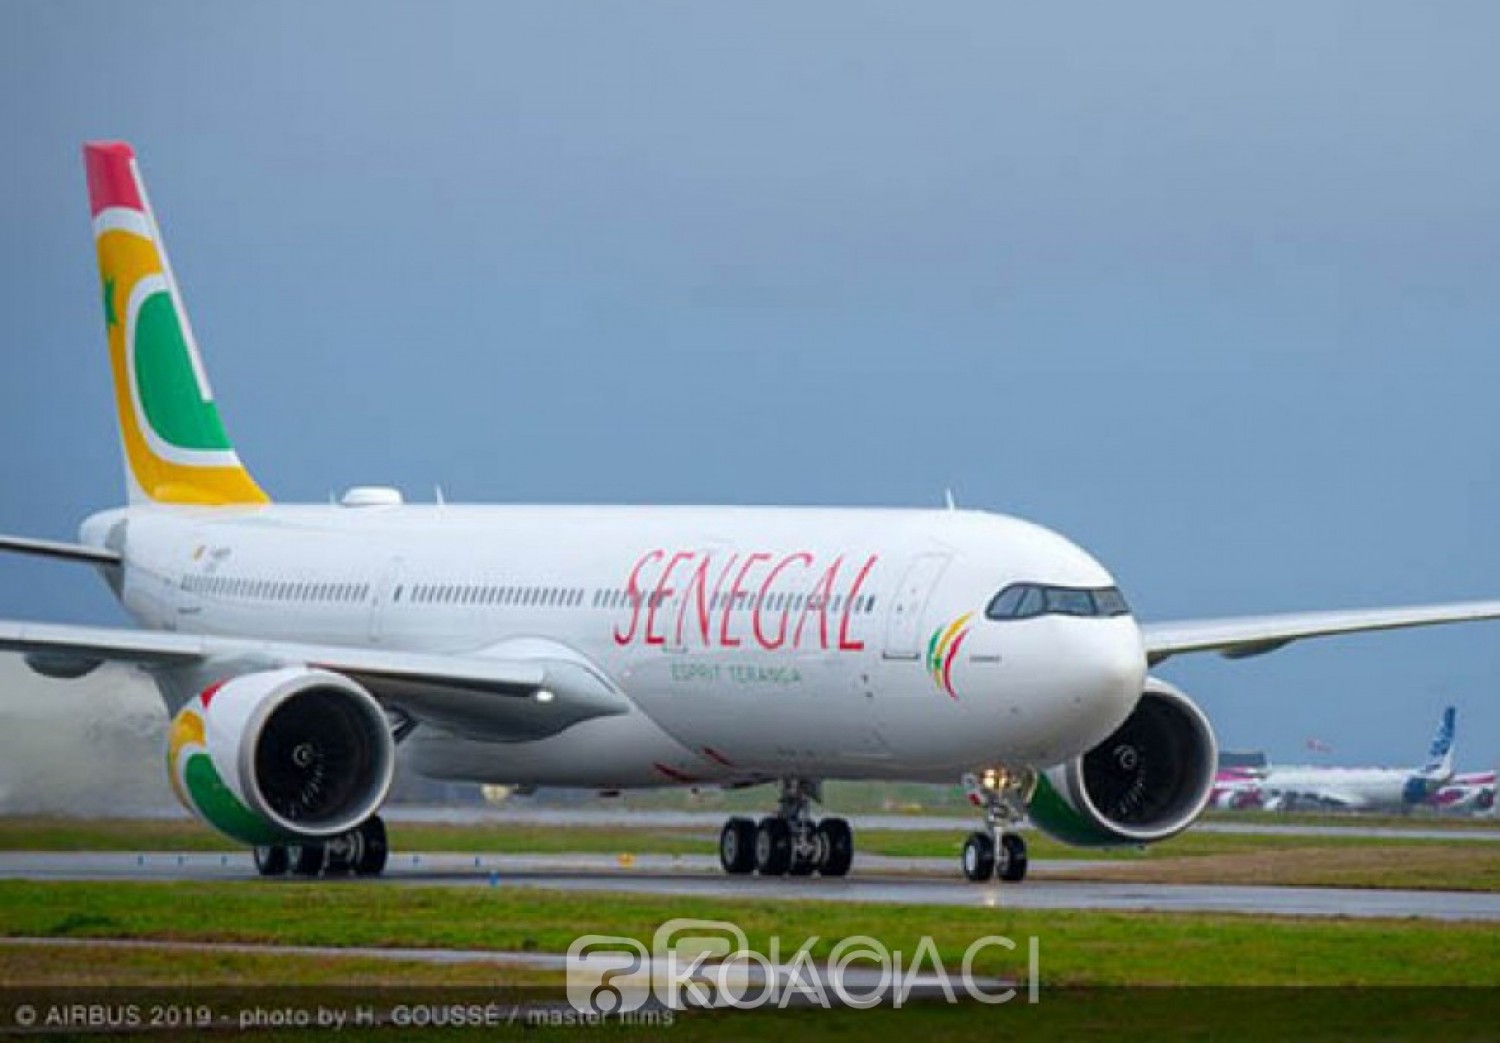 Sénégal: La compagnie nationale Air Senegal va ouvrir son capital